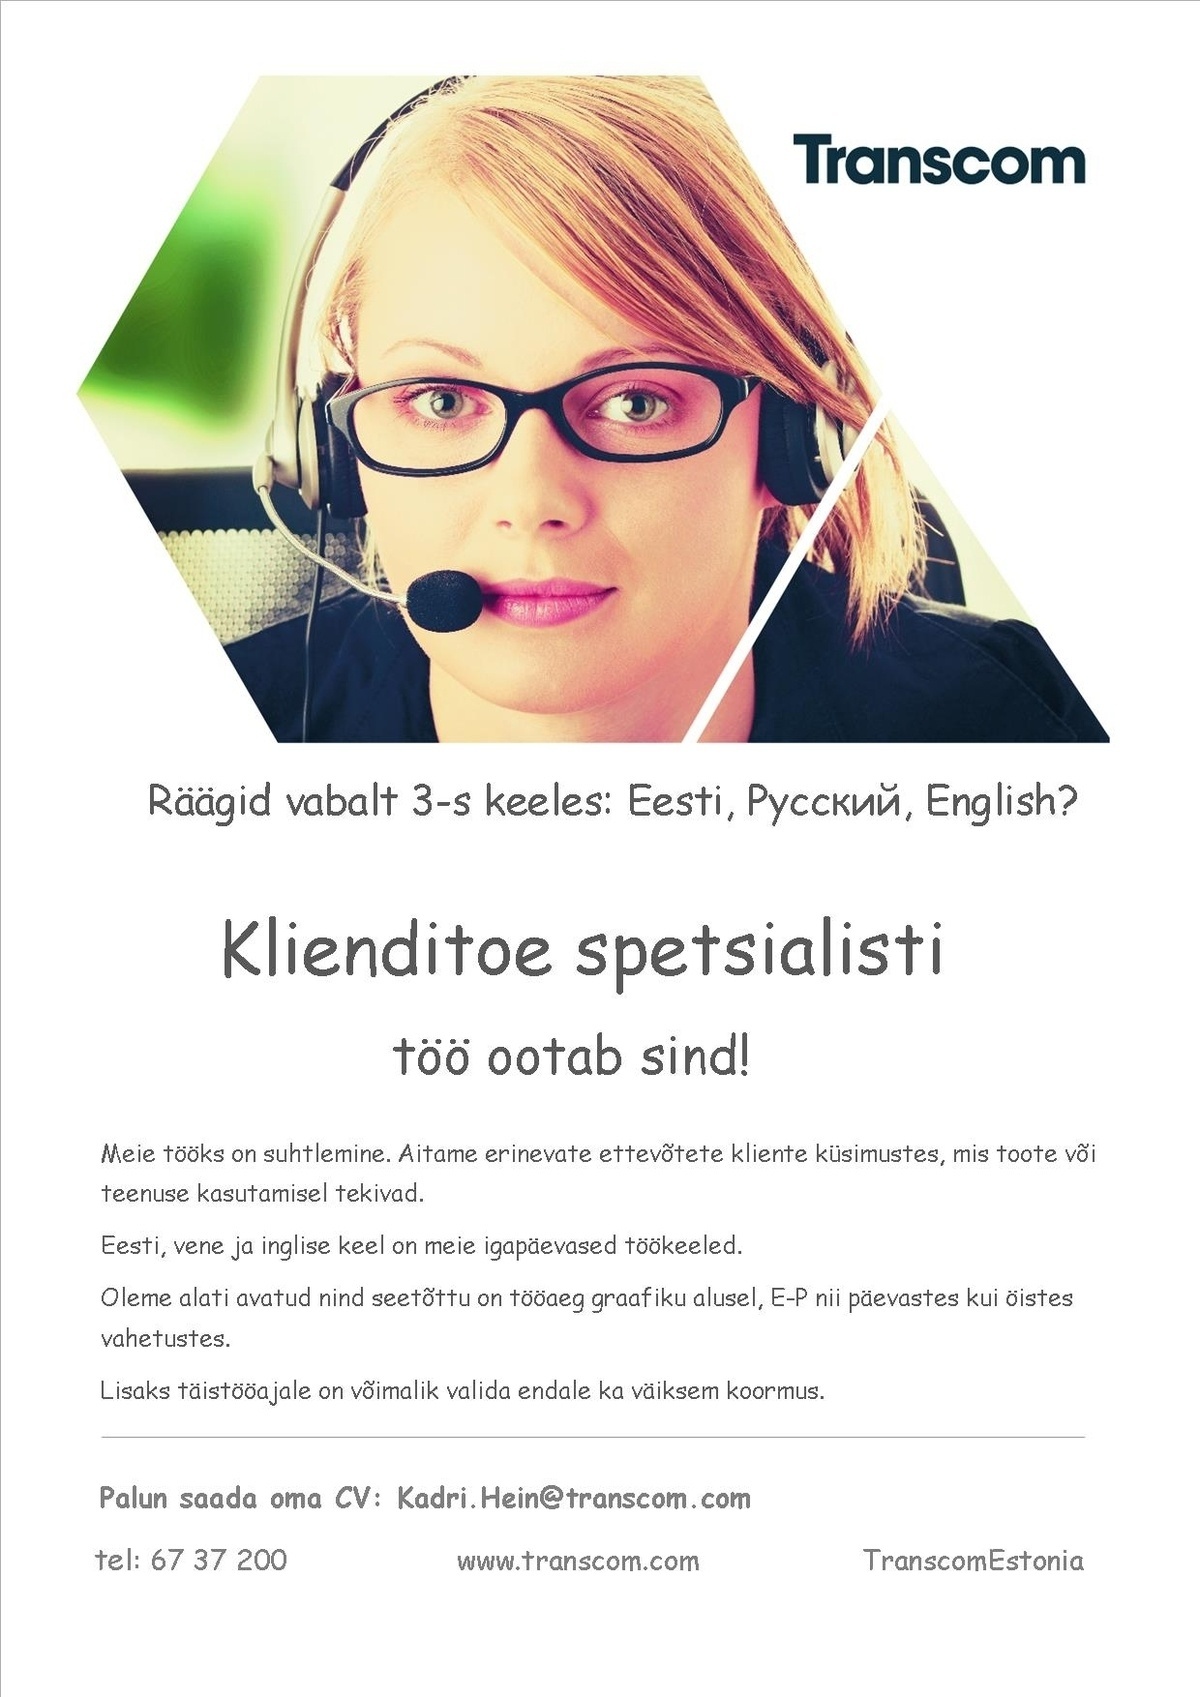 Transcom Eesti OÜ Klienditoe spetsialist